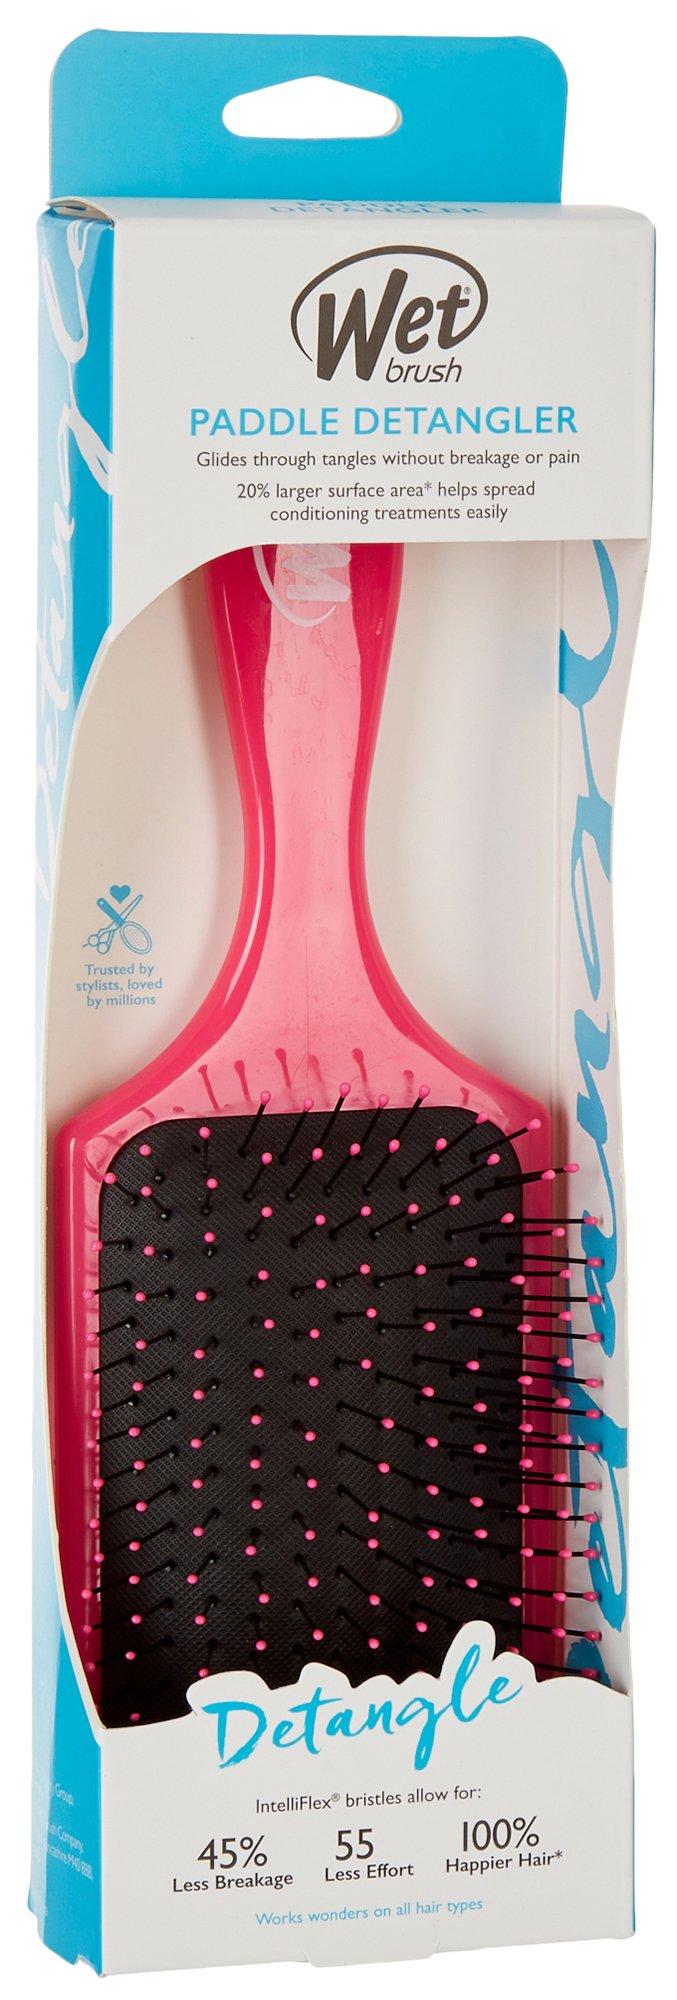 Wet Brush Paddle Detangler Hair Brush